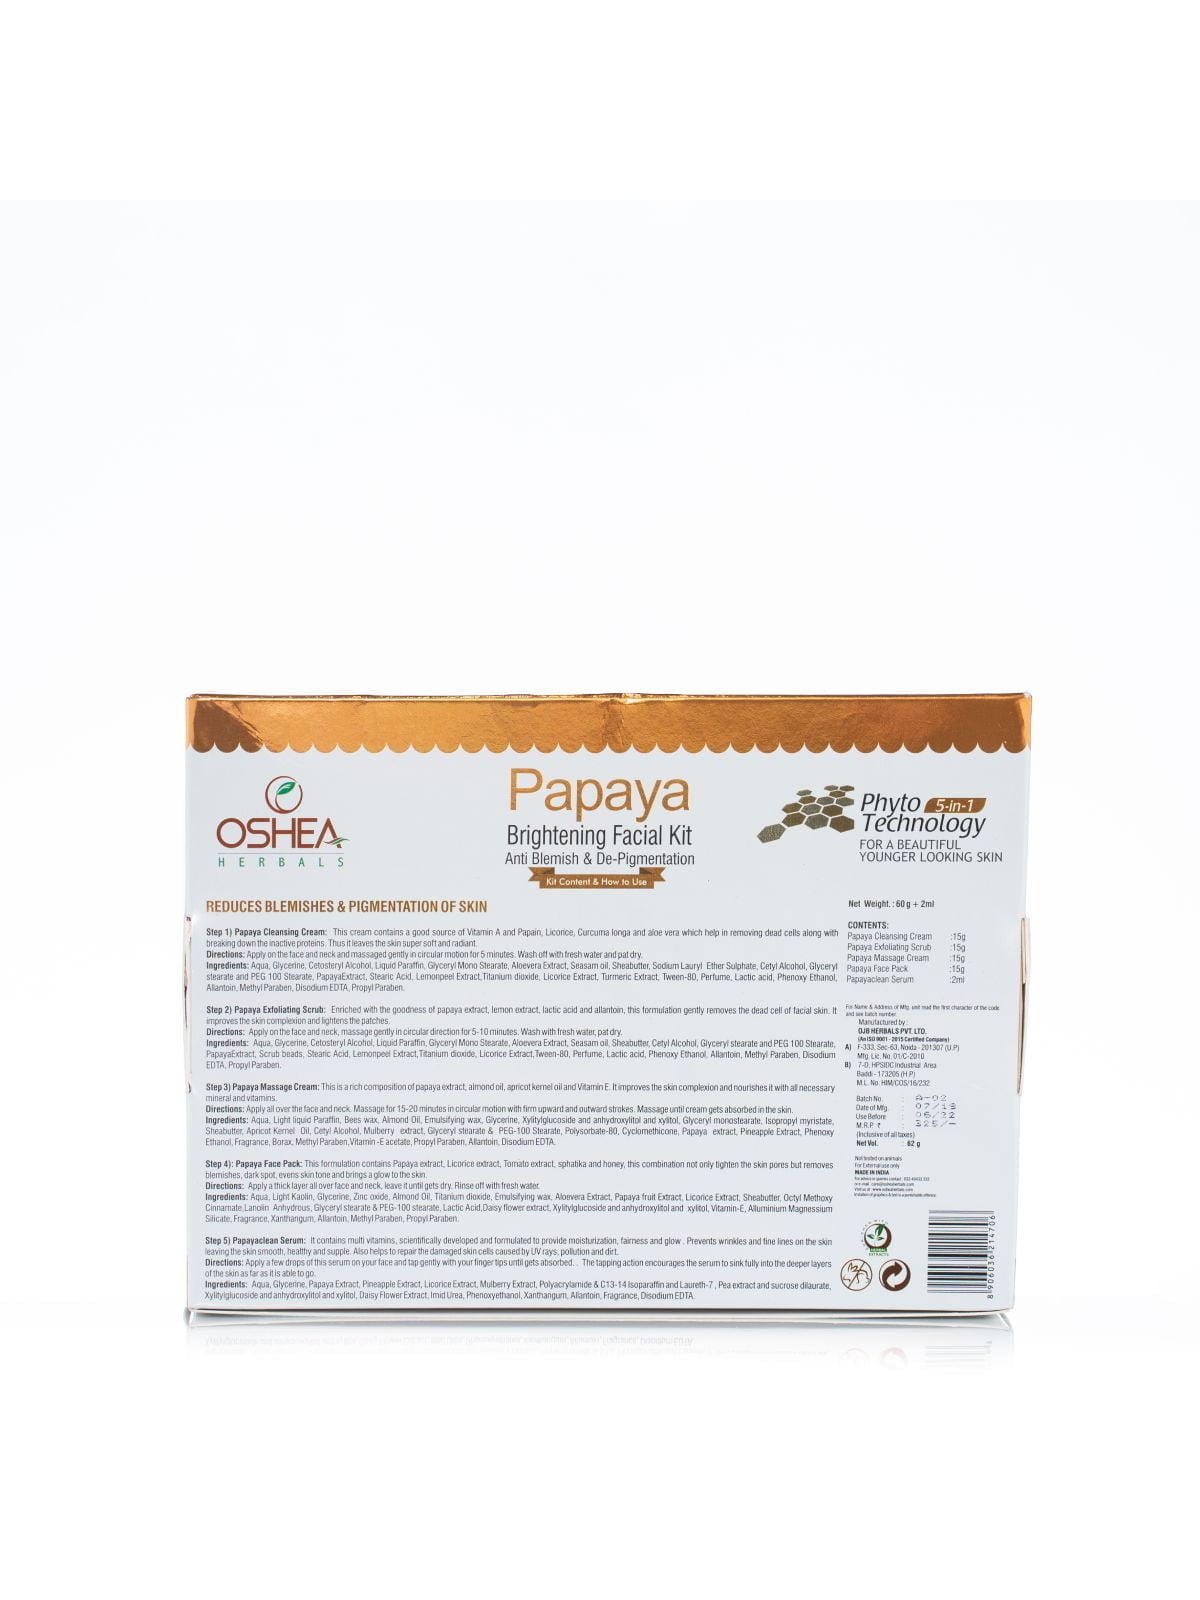 How to use Papaya Facial Kit